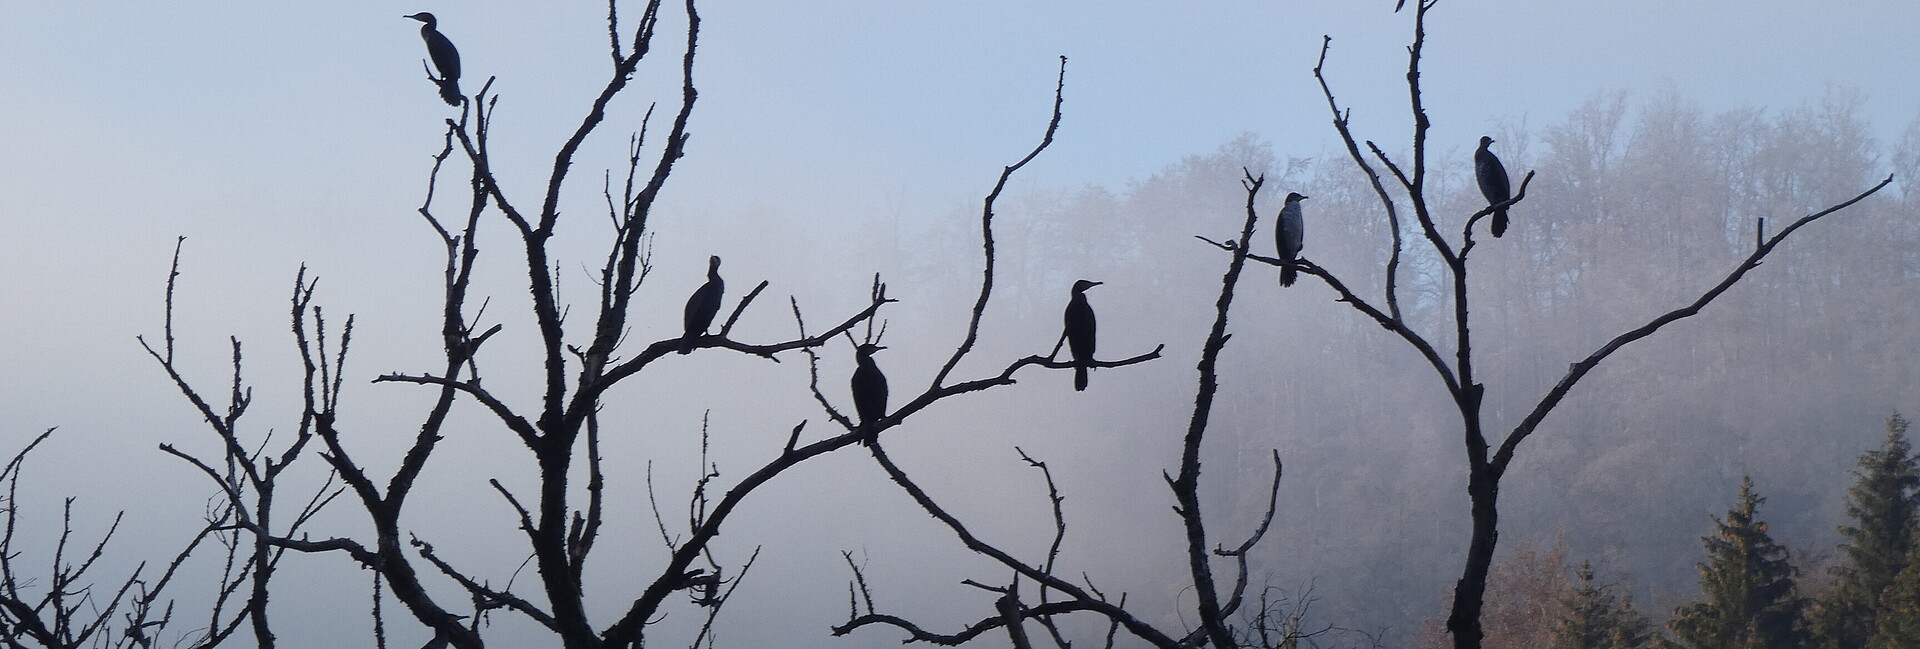 Kormorane sitzen auf Bäumen in bei nebligem Wetter